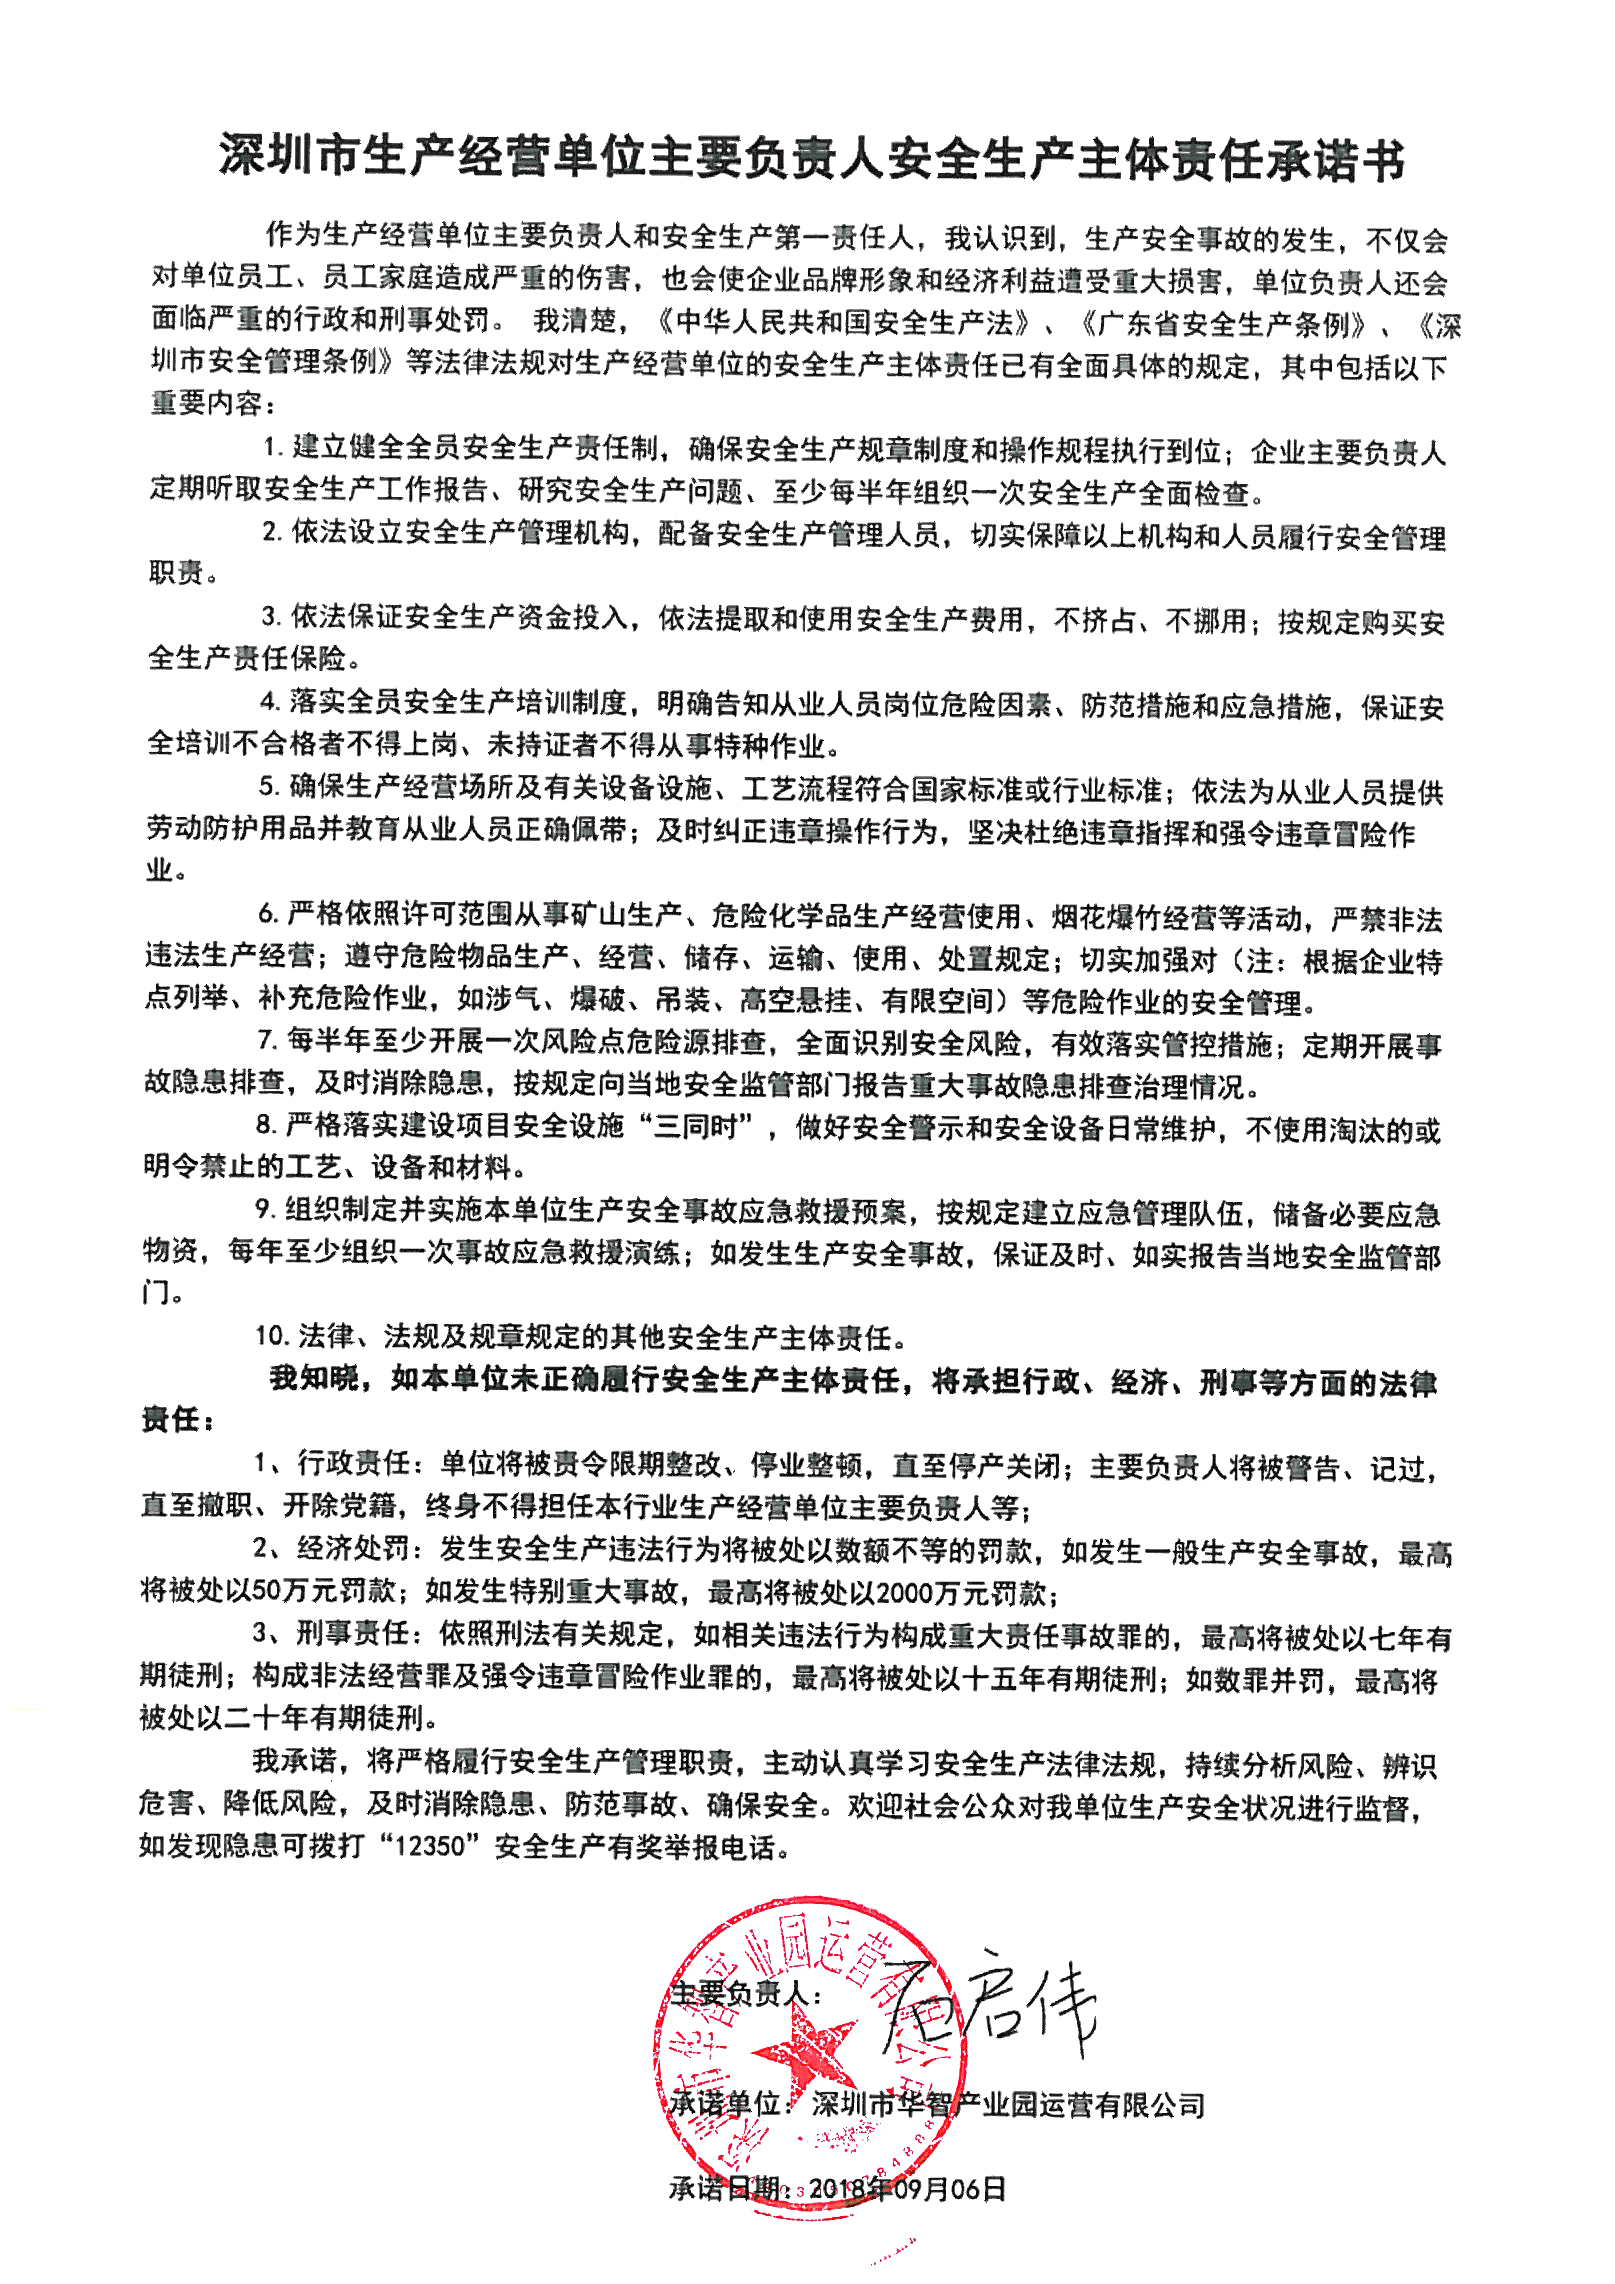 关于《深圳市生产经营单位主要负责人安全生产主体责任承诺书》的公示.jpg